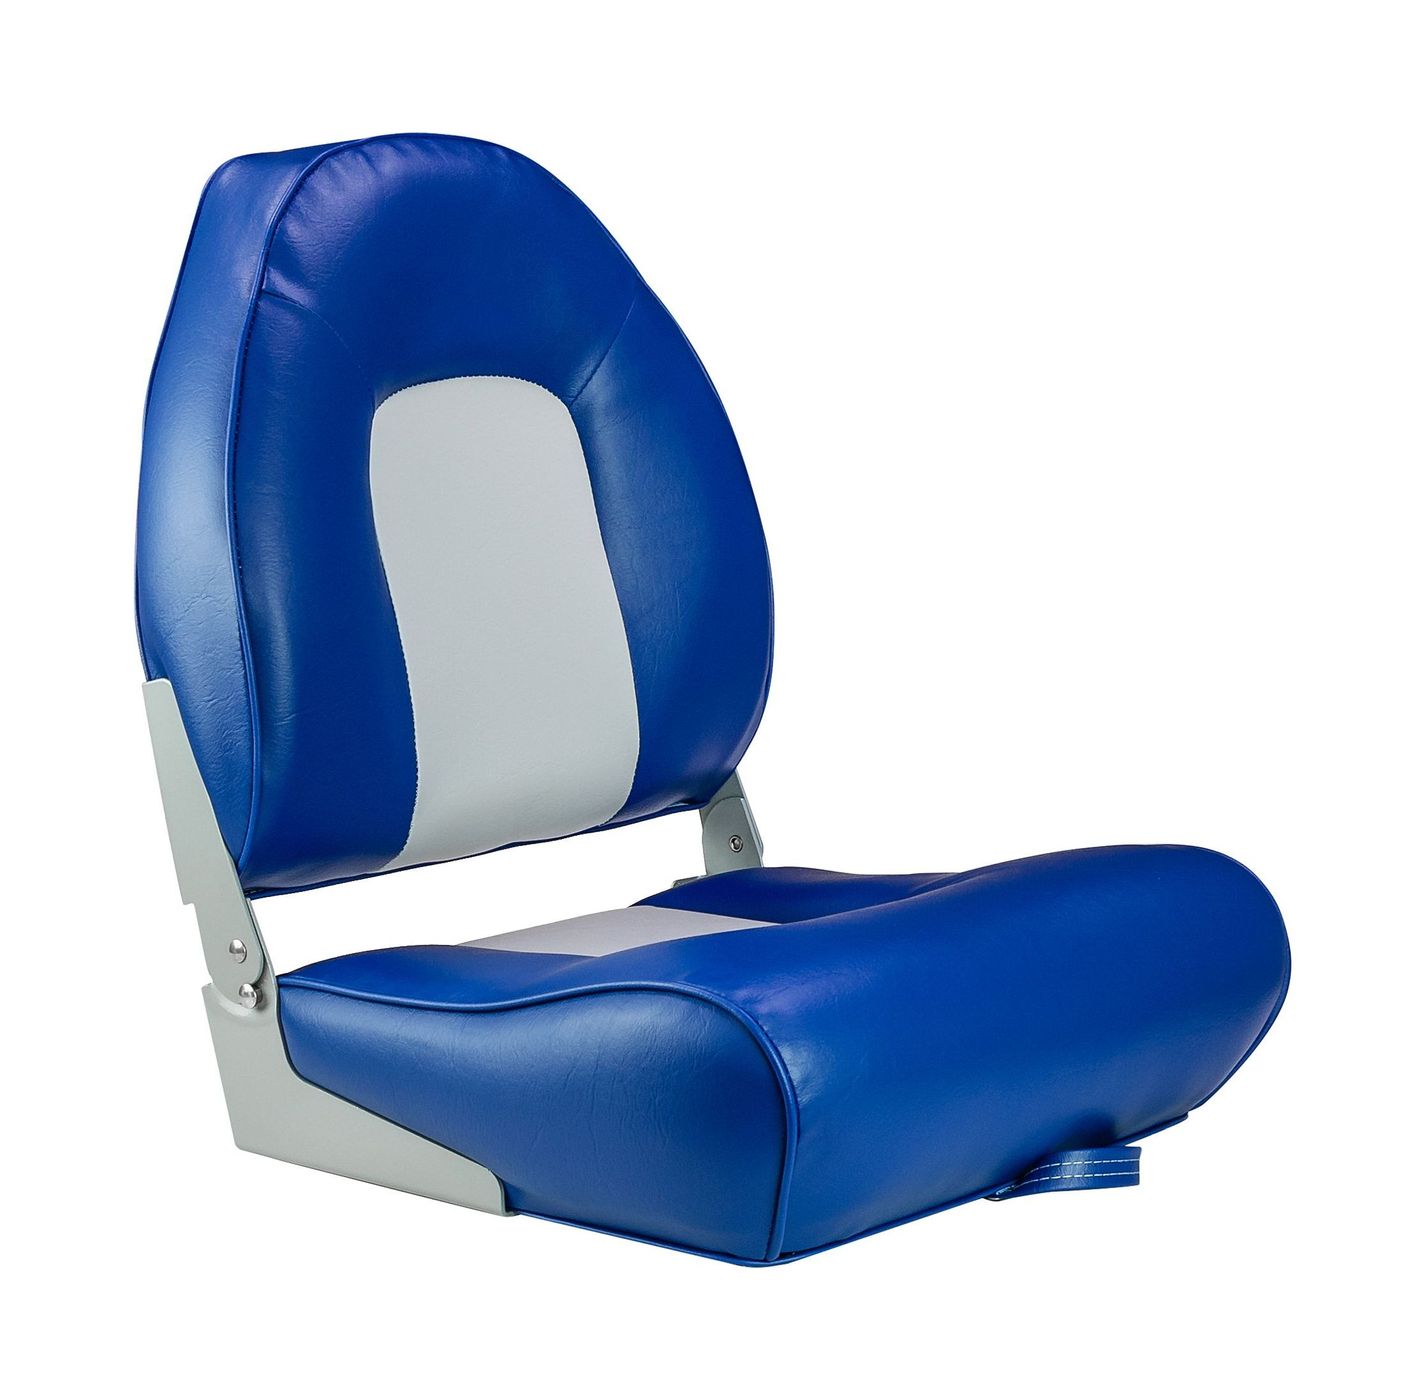 Кресло мягкое складное, обивка винил, цвет синий/серый, Marine Rocket 75116GB-MR